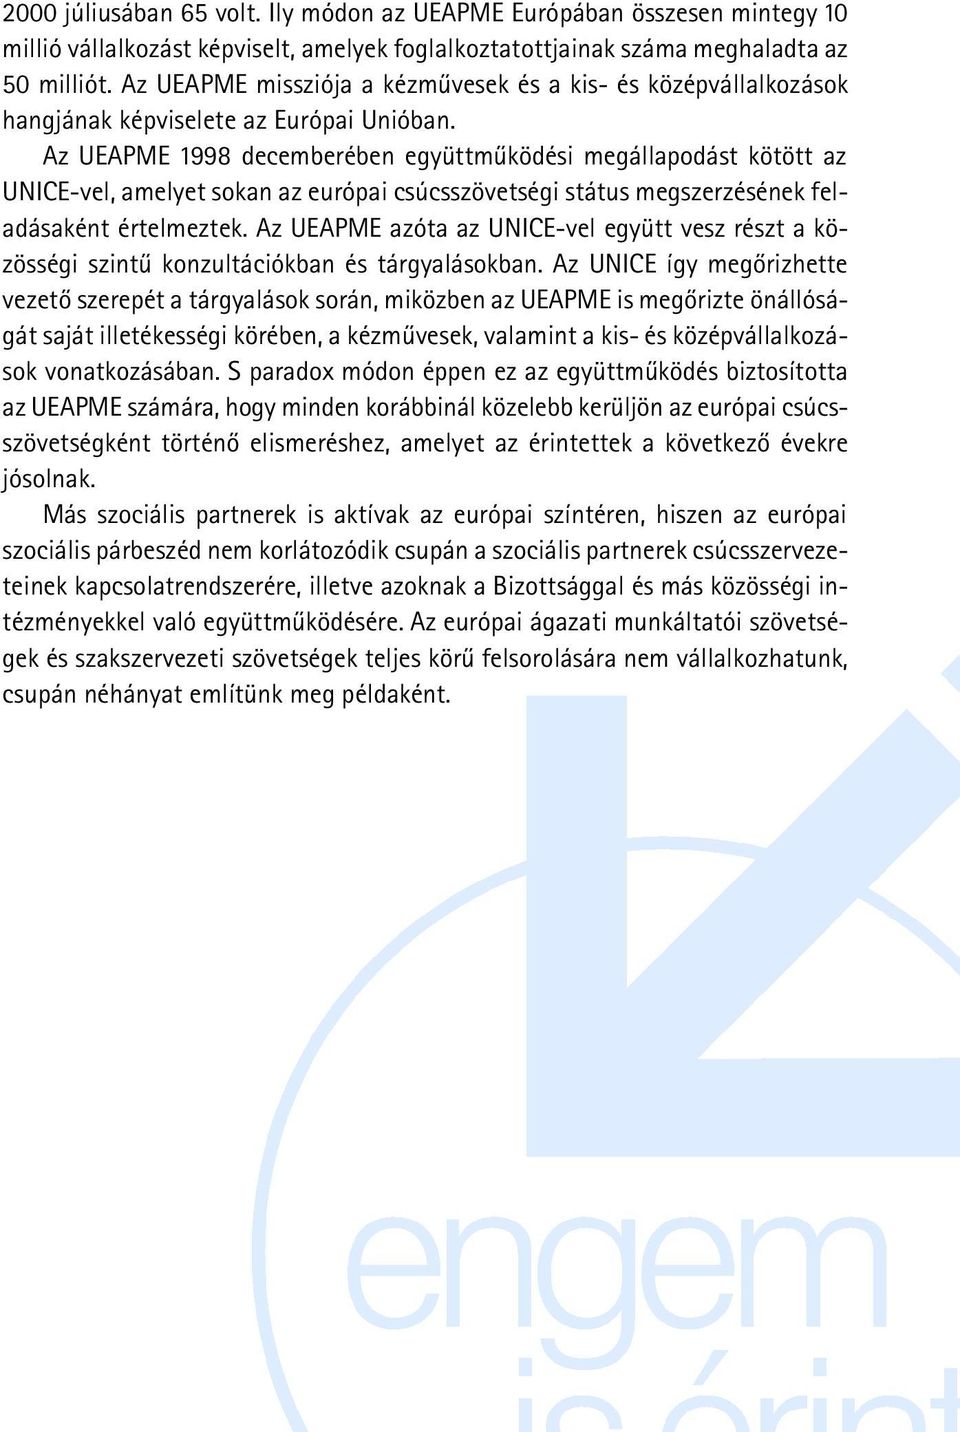 Az UEAPME 1998 decemberében együttmûködési megállapodást kötött az UNICE-vel, amelyet sokan az európai csúcsszövetségi státus megszerzésének feladásaként értelmeztek.